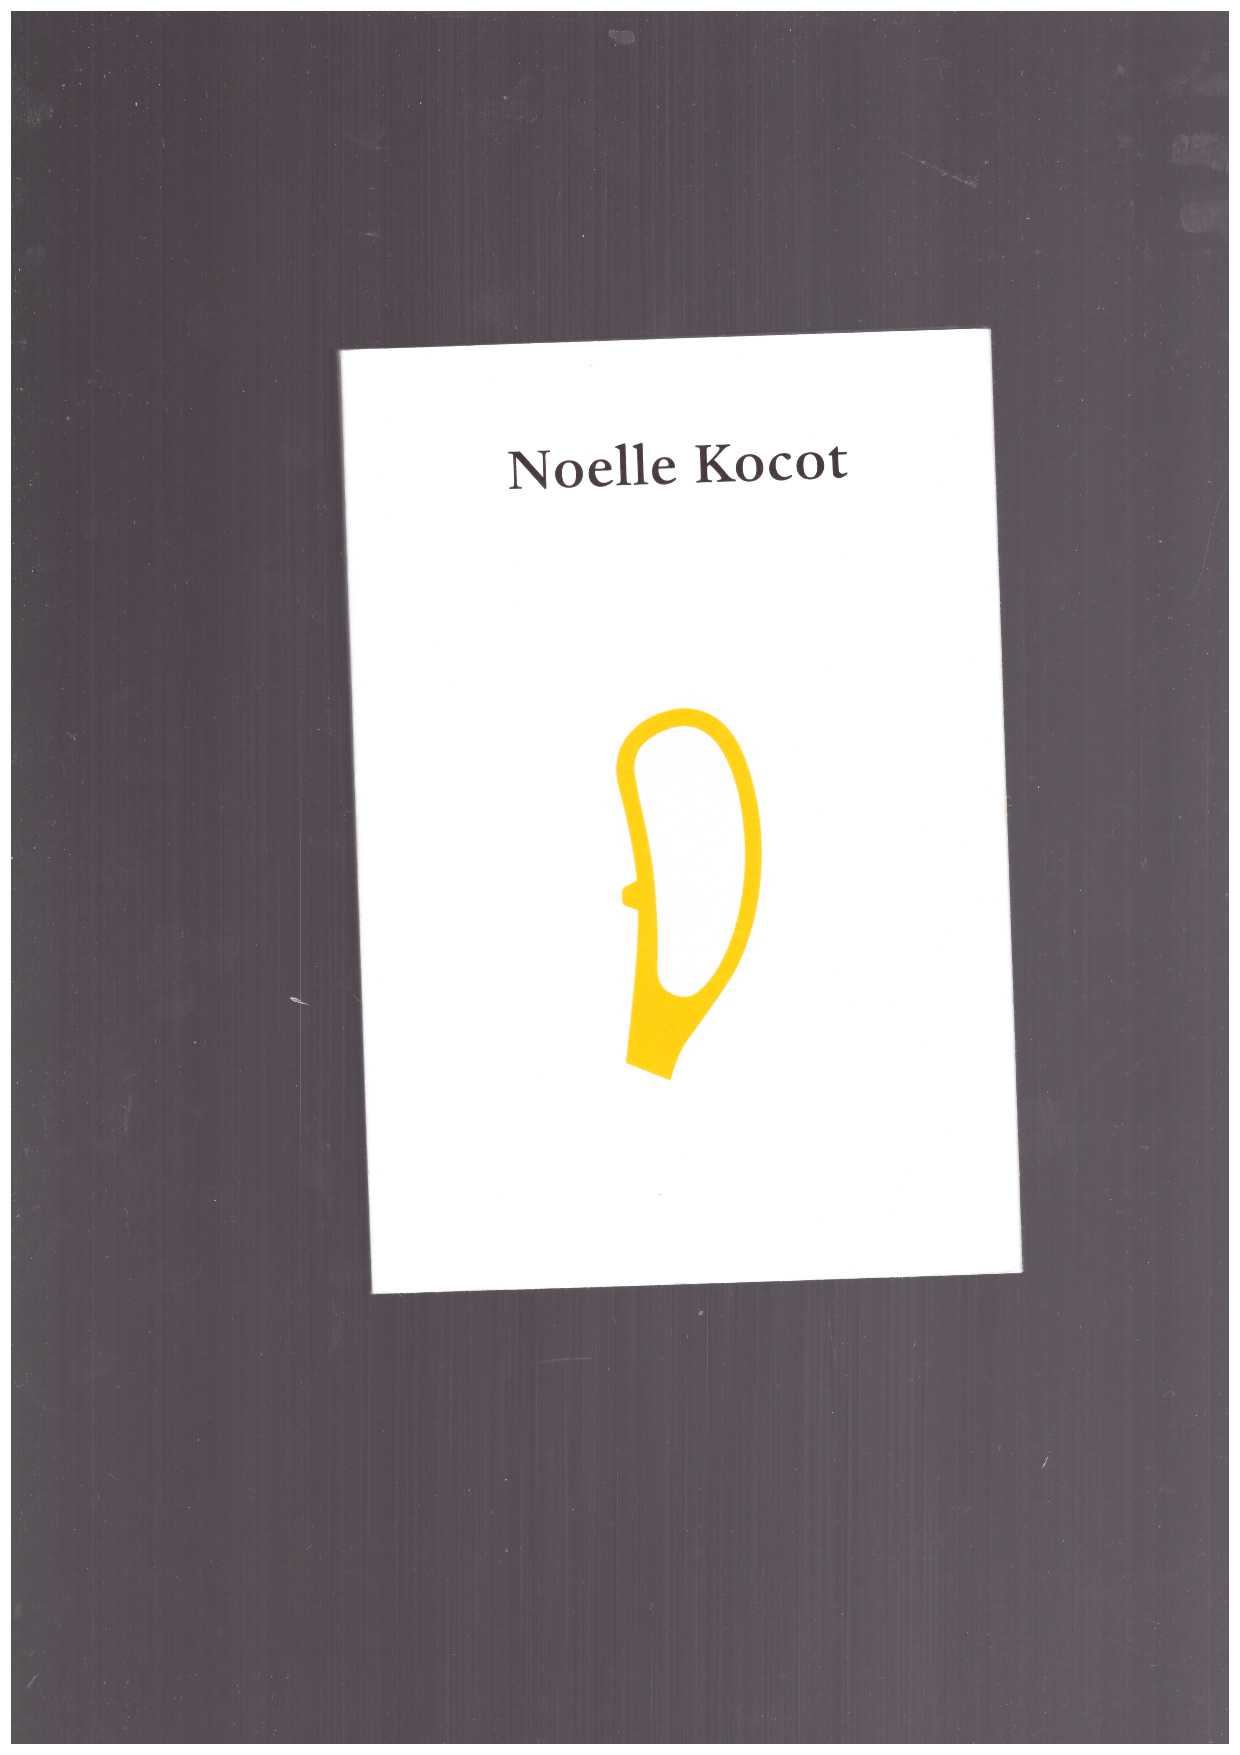 KOCOT, Noelle - Noelle Kocot